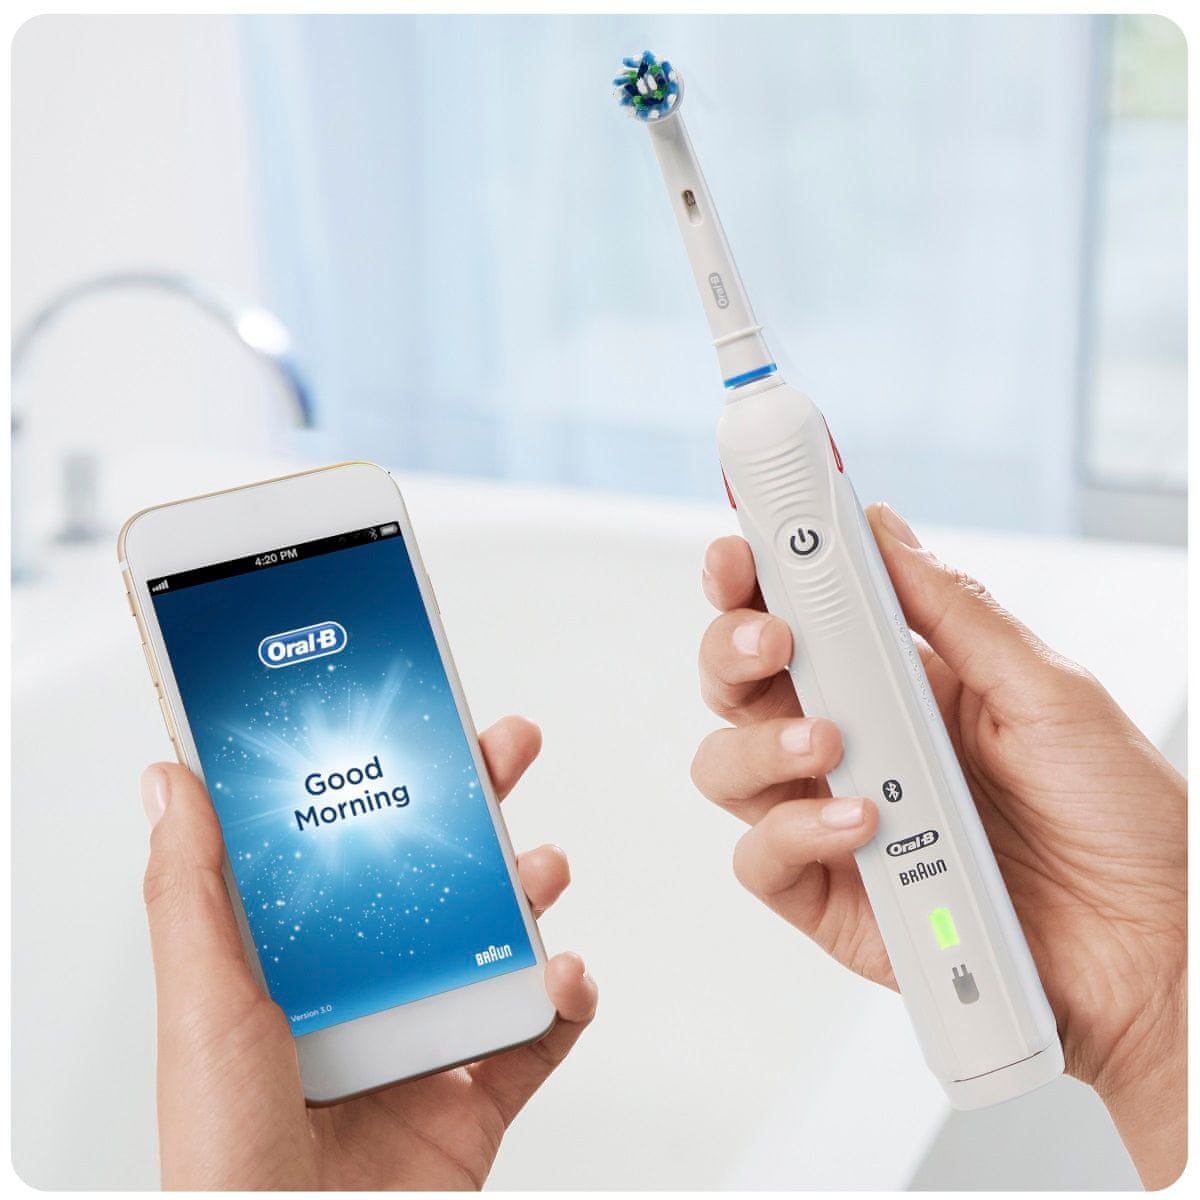 Chytrý Elektrický zubní kartáček Oral-B Smart 5900 Cross Action duo handle mobilní aplikace připojení bluetooth